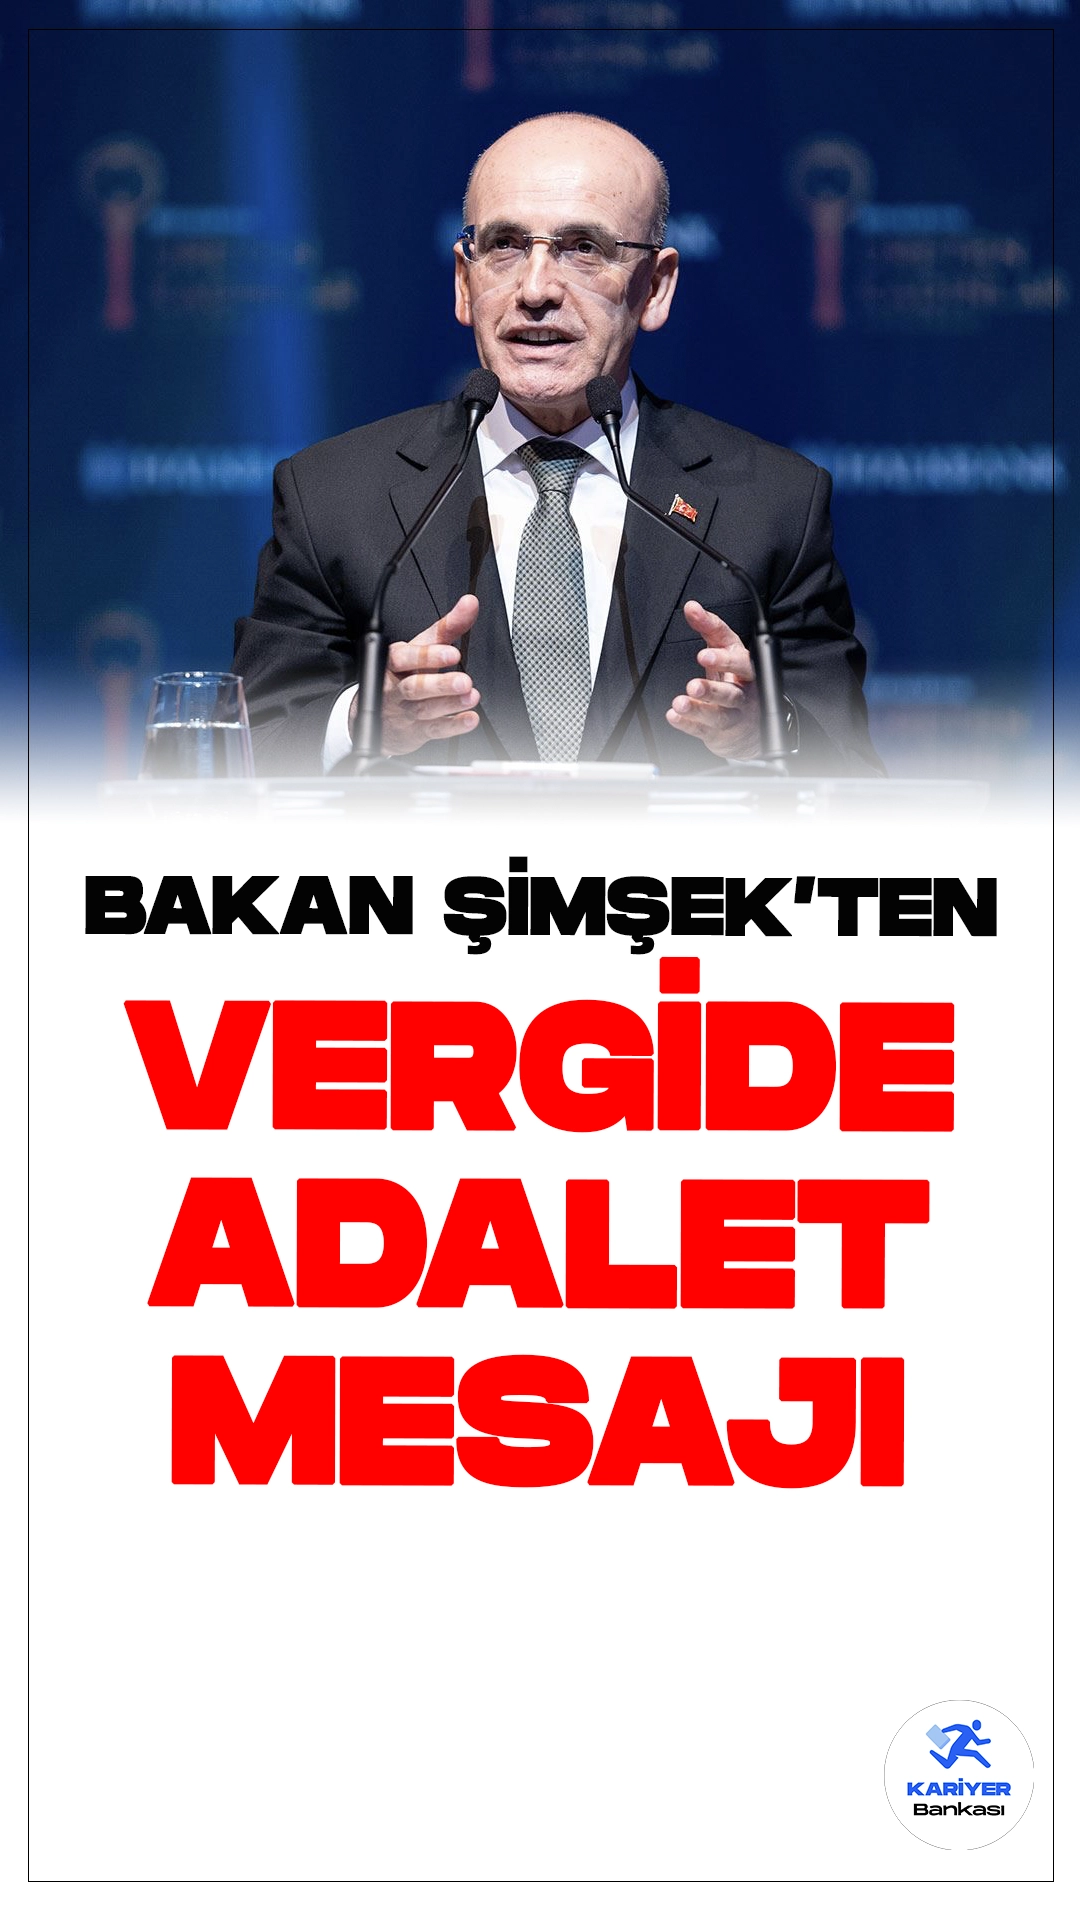 Bakan Şimşek'ten Vergide Adalet Mesajı.Hazine ve Maliye Bakanı Mehmet Şimşek, vergide adalet ve etkinliği artırmak için yeni vergi düzenlemelerinin kabul edildiğini duyurdu. Şimşek, amaçlarının çok kazanandan çok, az kazanandan az vergi almak olduğunu vurguladı.